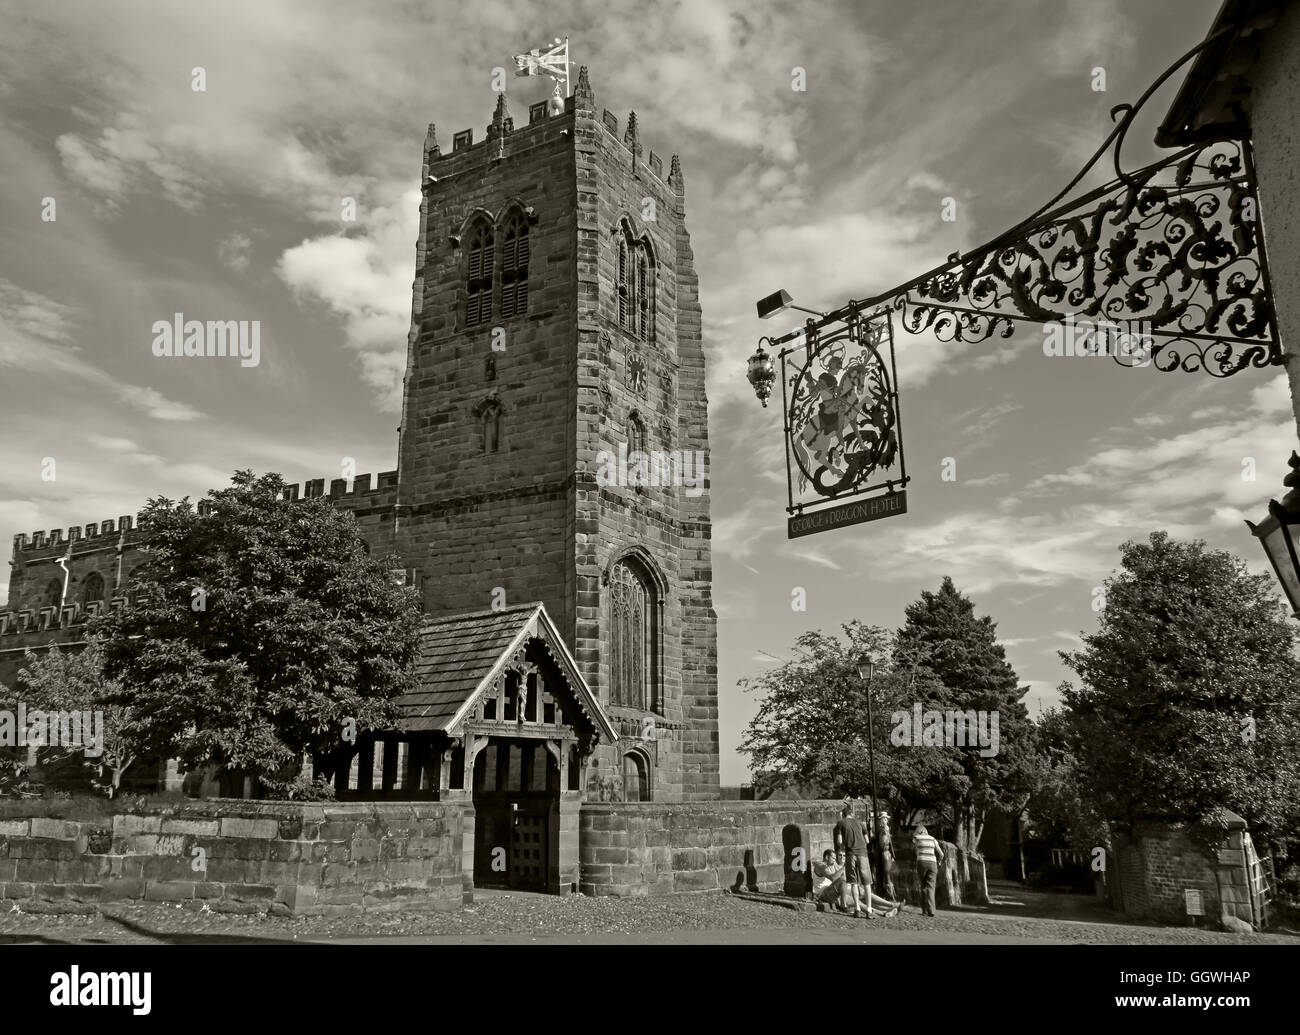 George und der Drache-Schmiedeeisen-Zeichen und St. Marys Church, Great Budworth, Cheshire, England, UK - Monochrom-Sepia Stockfoto